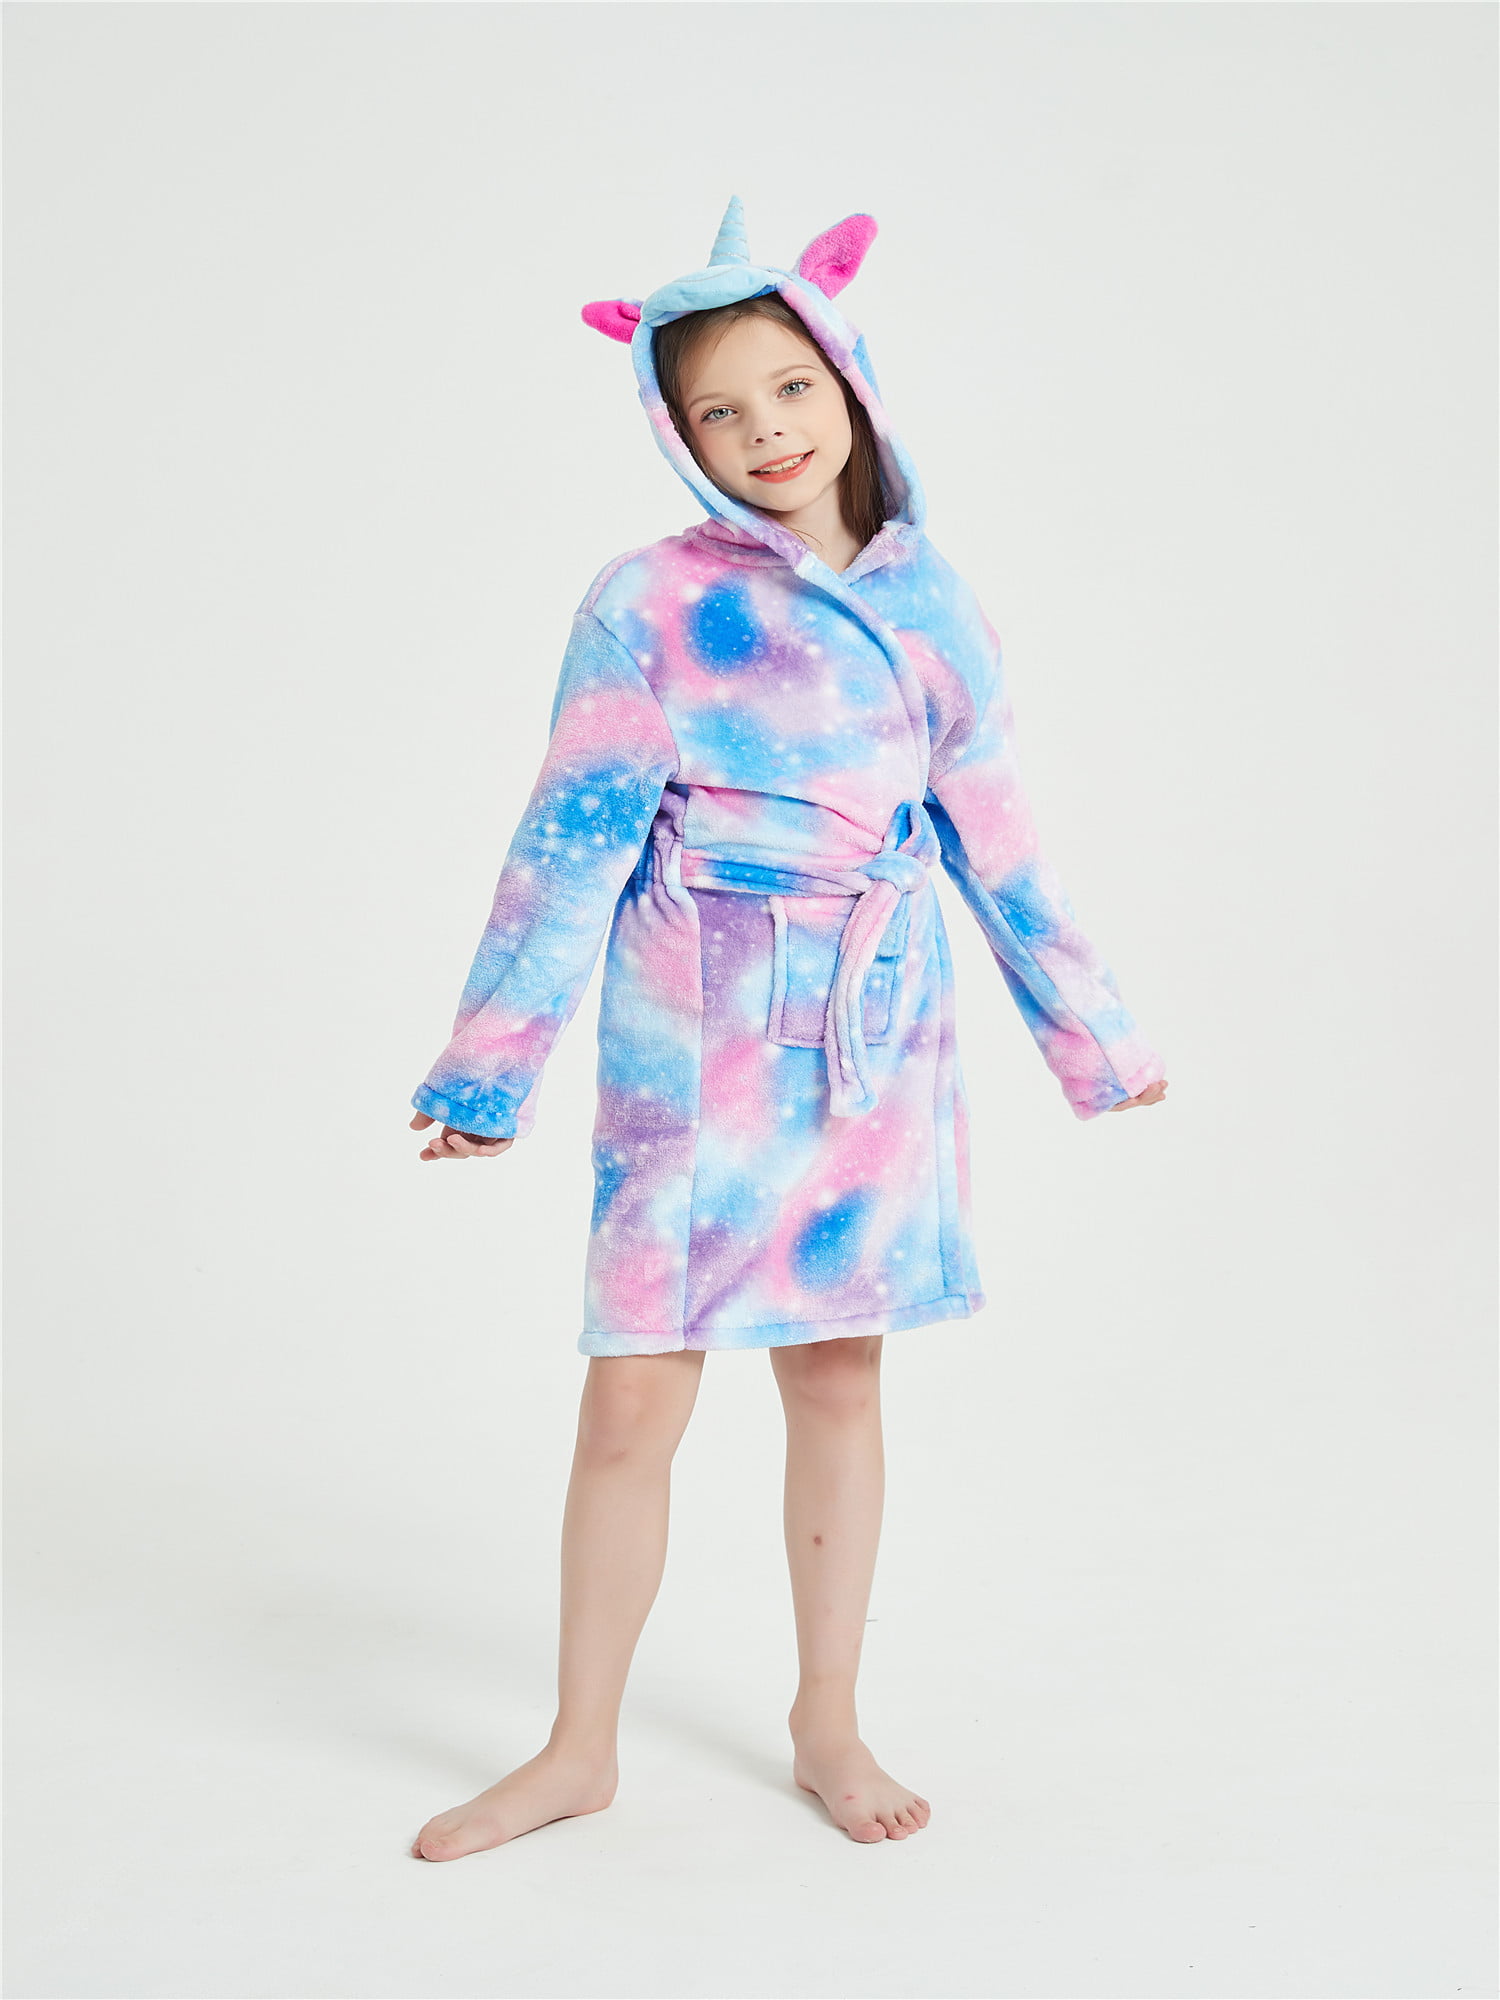 Details about   Sweet Coral Fleece Animal Sleepwear Winter Cute Hooded Nightgown Homewear Girls